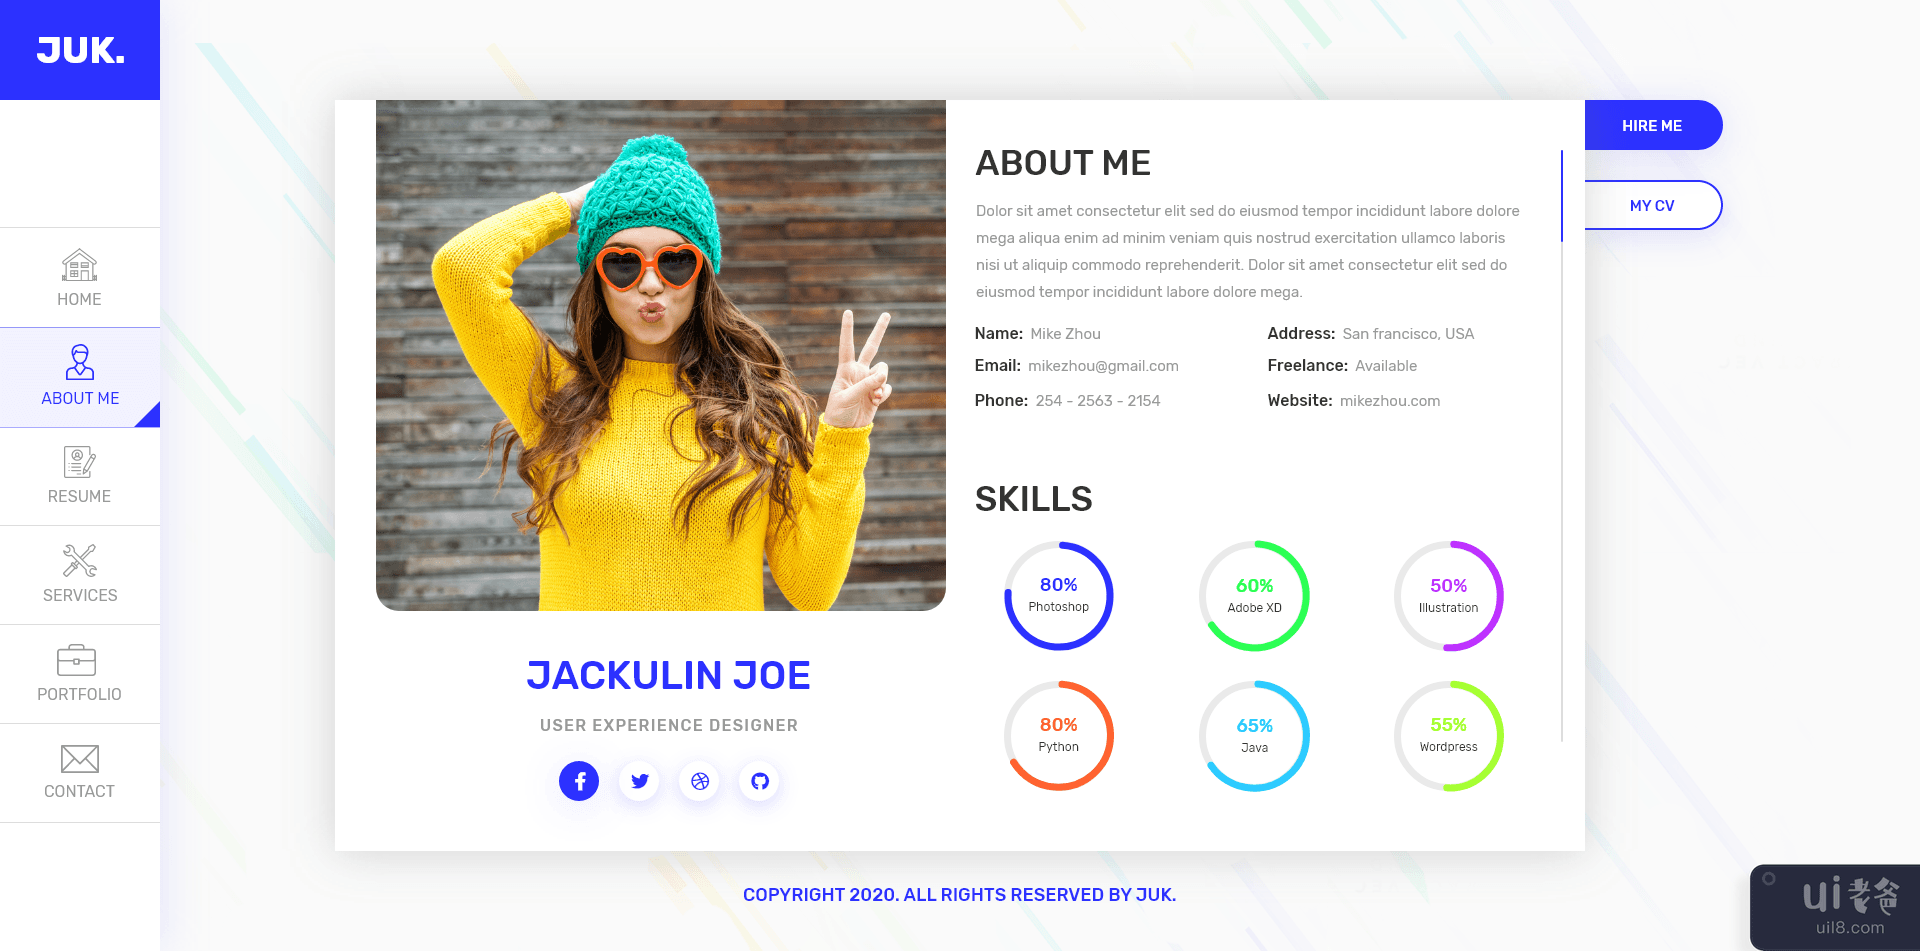 简历/简历/投资组合 UI 套件(CV/ Resume/ Portfolio UI Kits)插图1